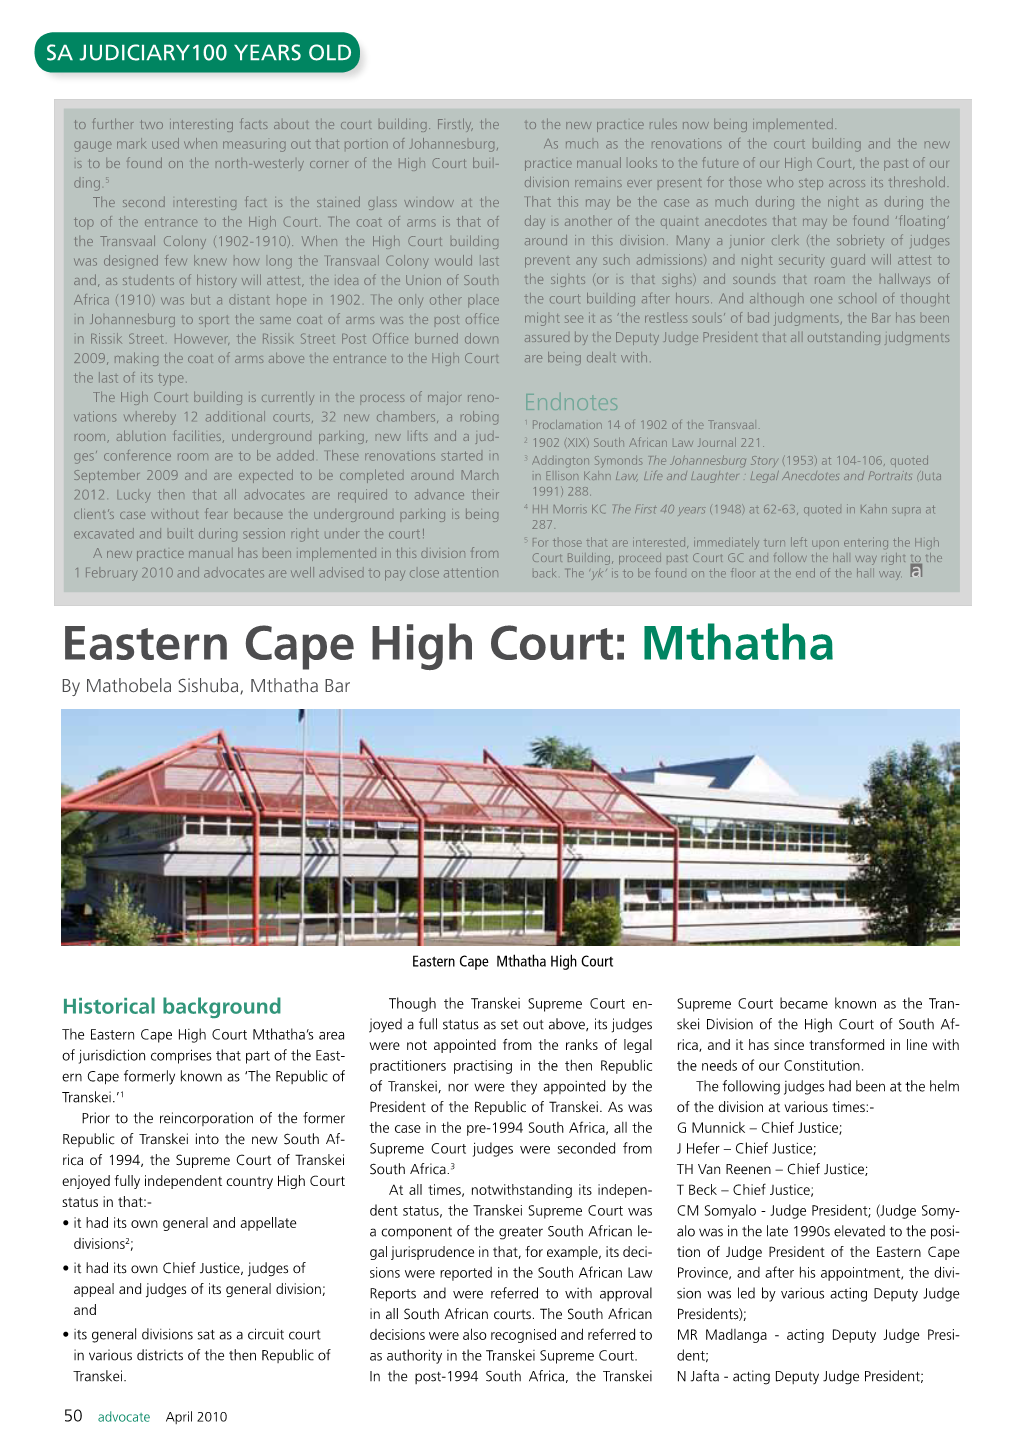 Eastern Cape High Court: Mthatha by Mathobela Sishuba, Mthatha Bar